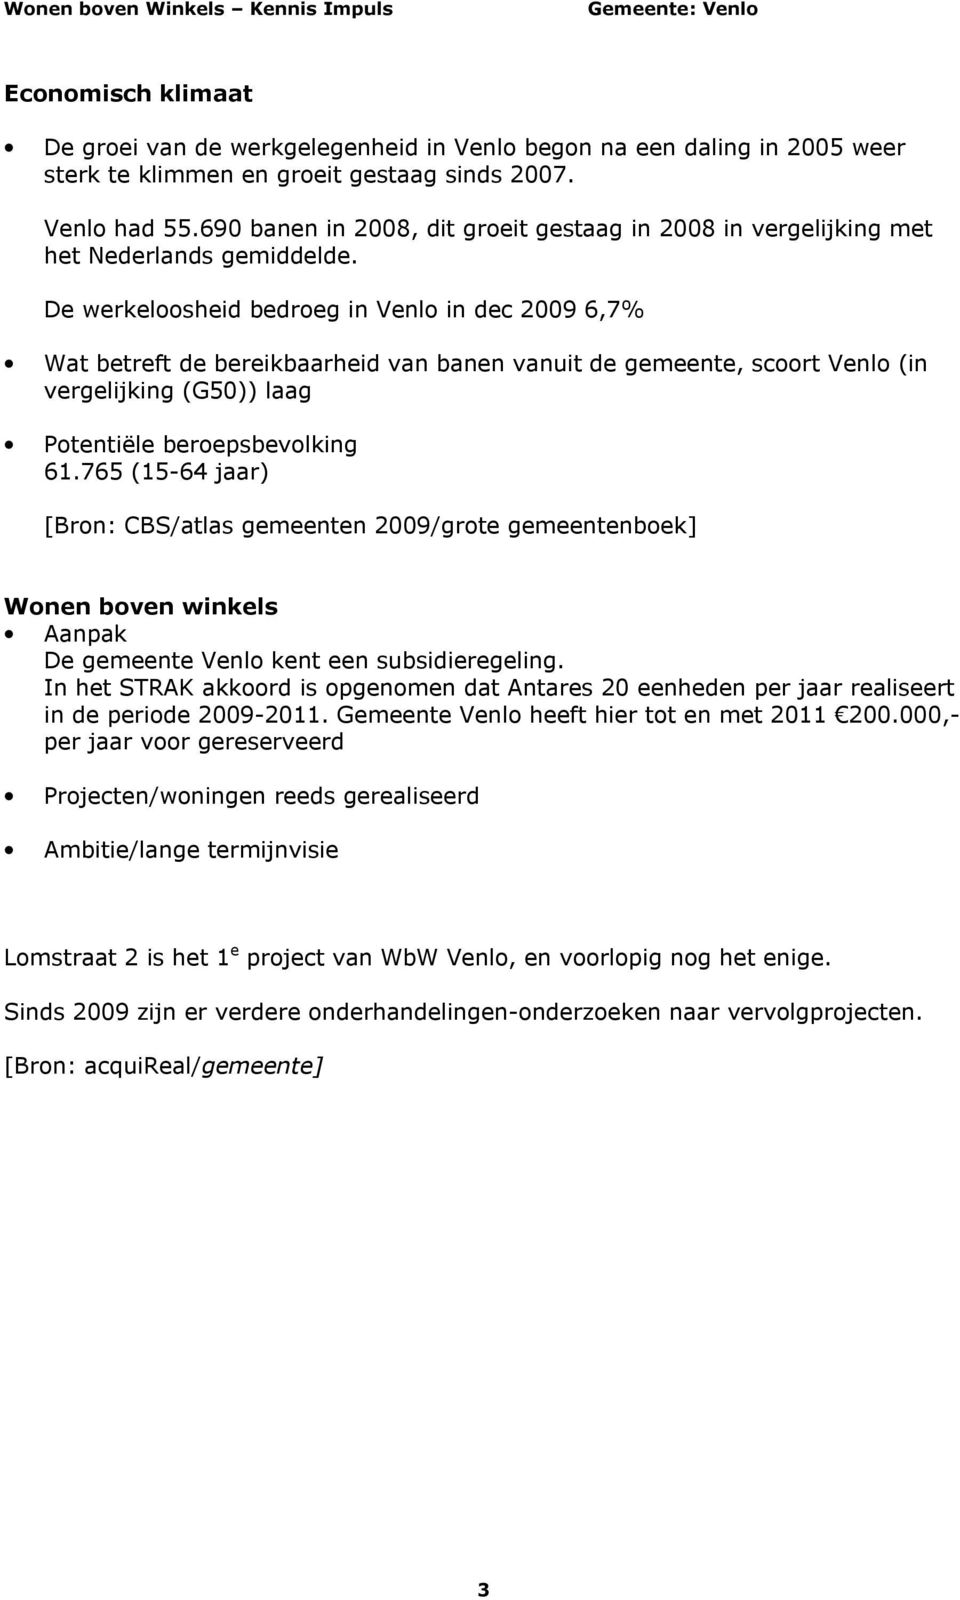 De werkeloosheid bedroeg in Venlo in dec 2009 6,7% Wat betreft de bereikbaarheid van banen vanuit de gemeente, scoort Venlo (in vergelijking (G50)) laag Potentiële beroepsbevolking 61.